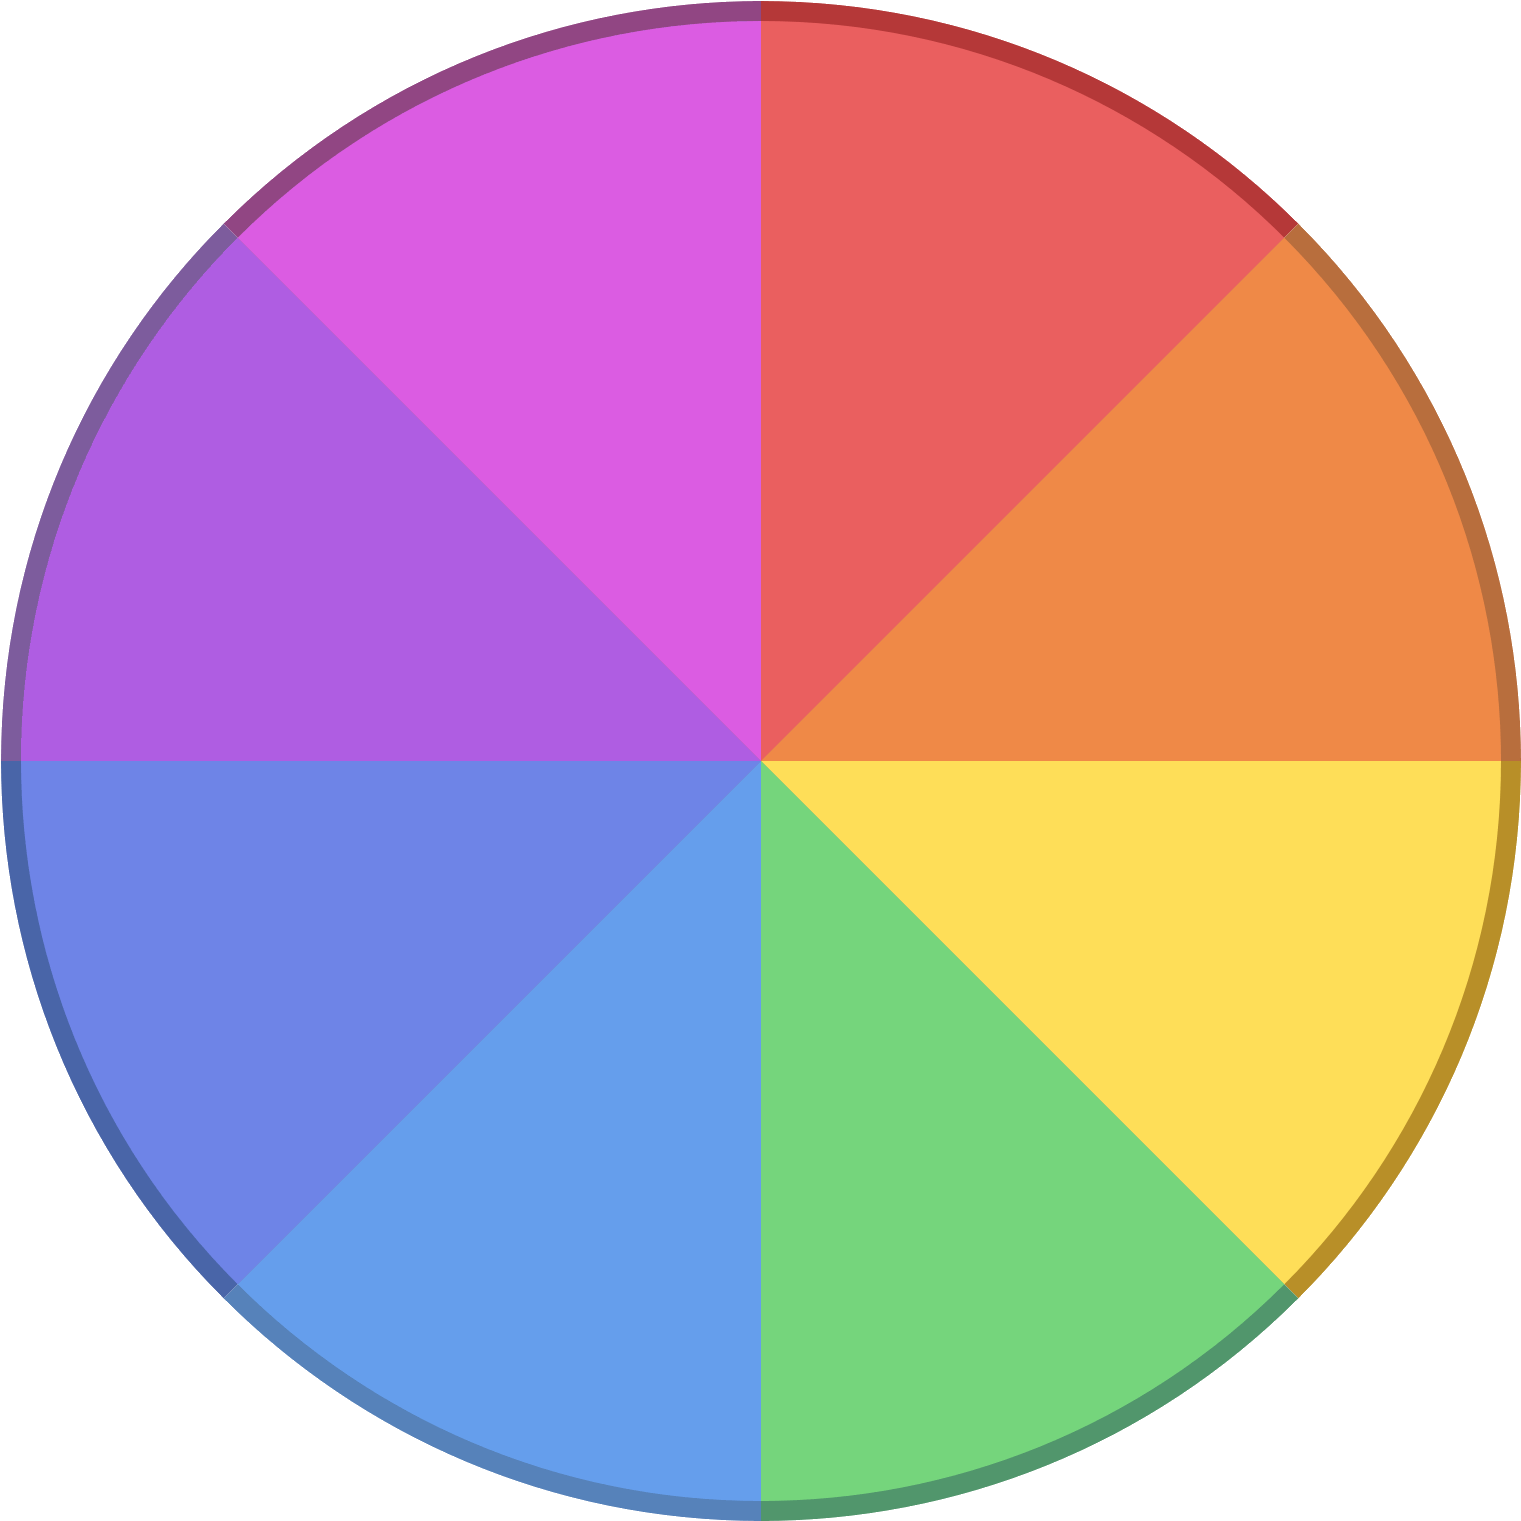 Цветовой круг. Цветовая палитра круглая. Сектор круга. Разноцветный круг с секторами.